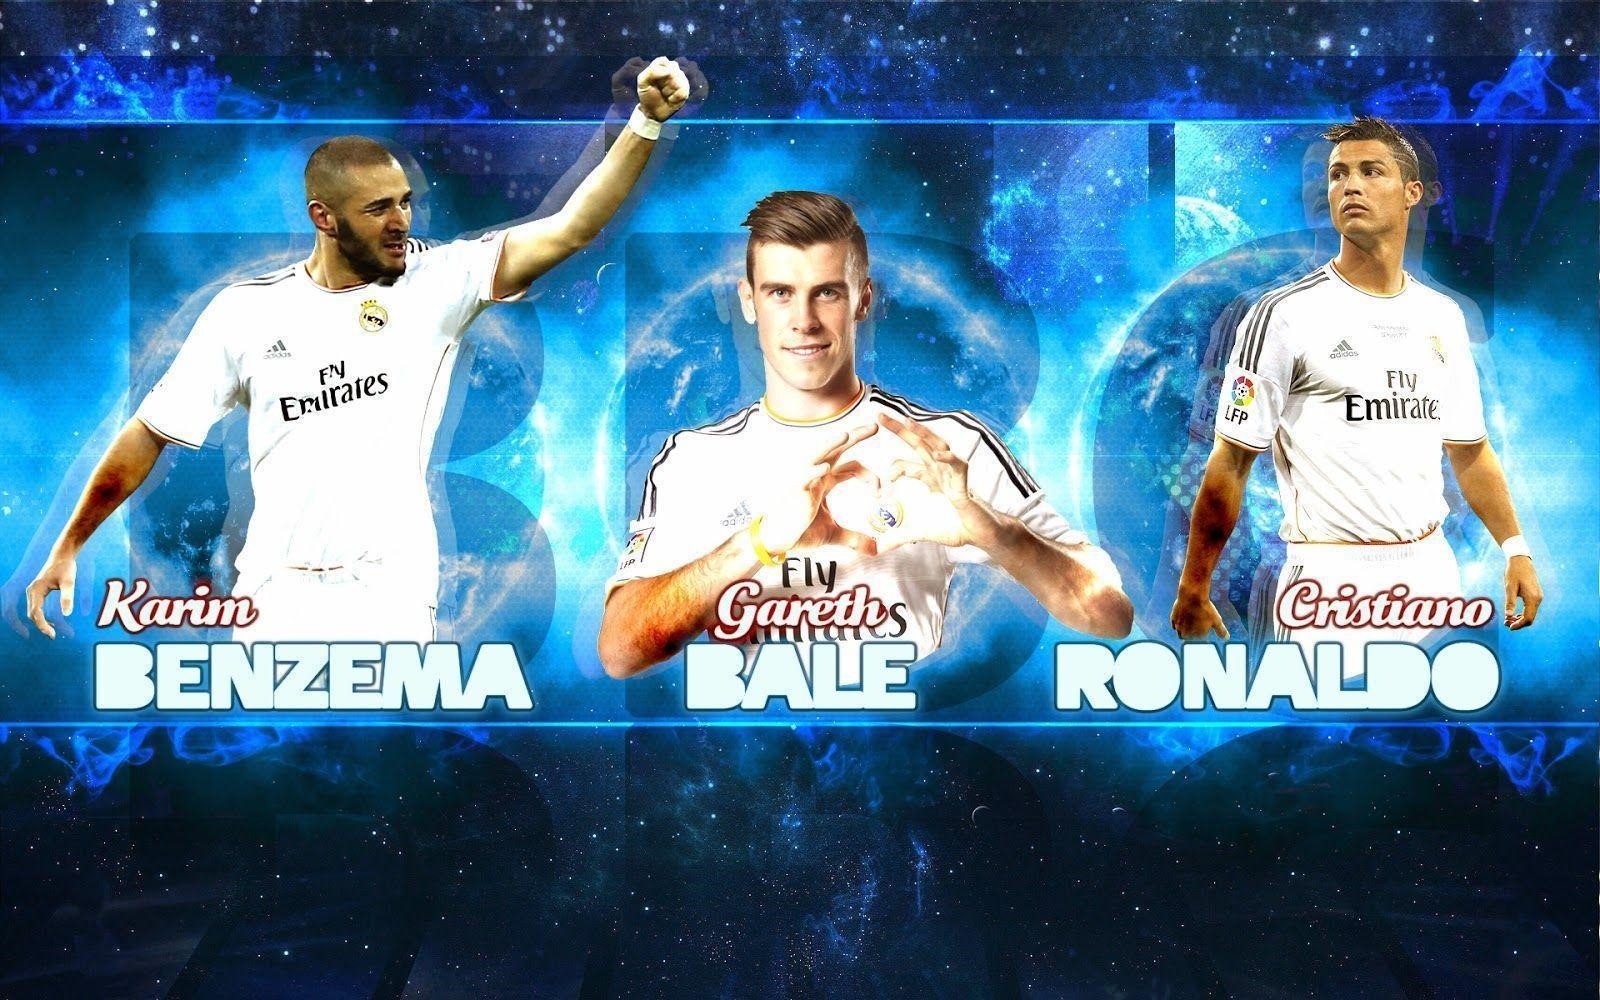 Top hình nền Real Madrid full HD đẹp nhất thế giới